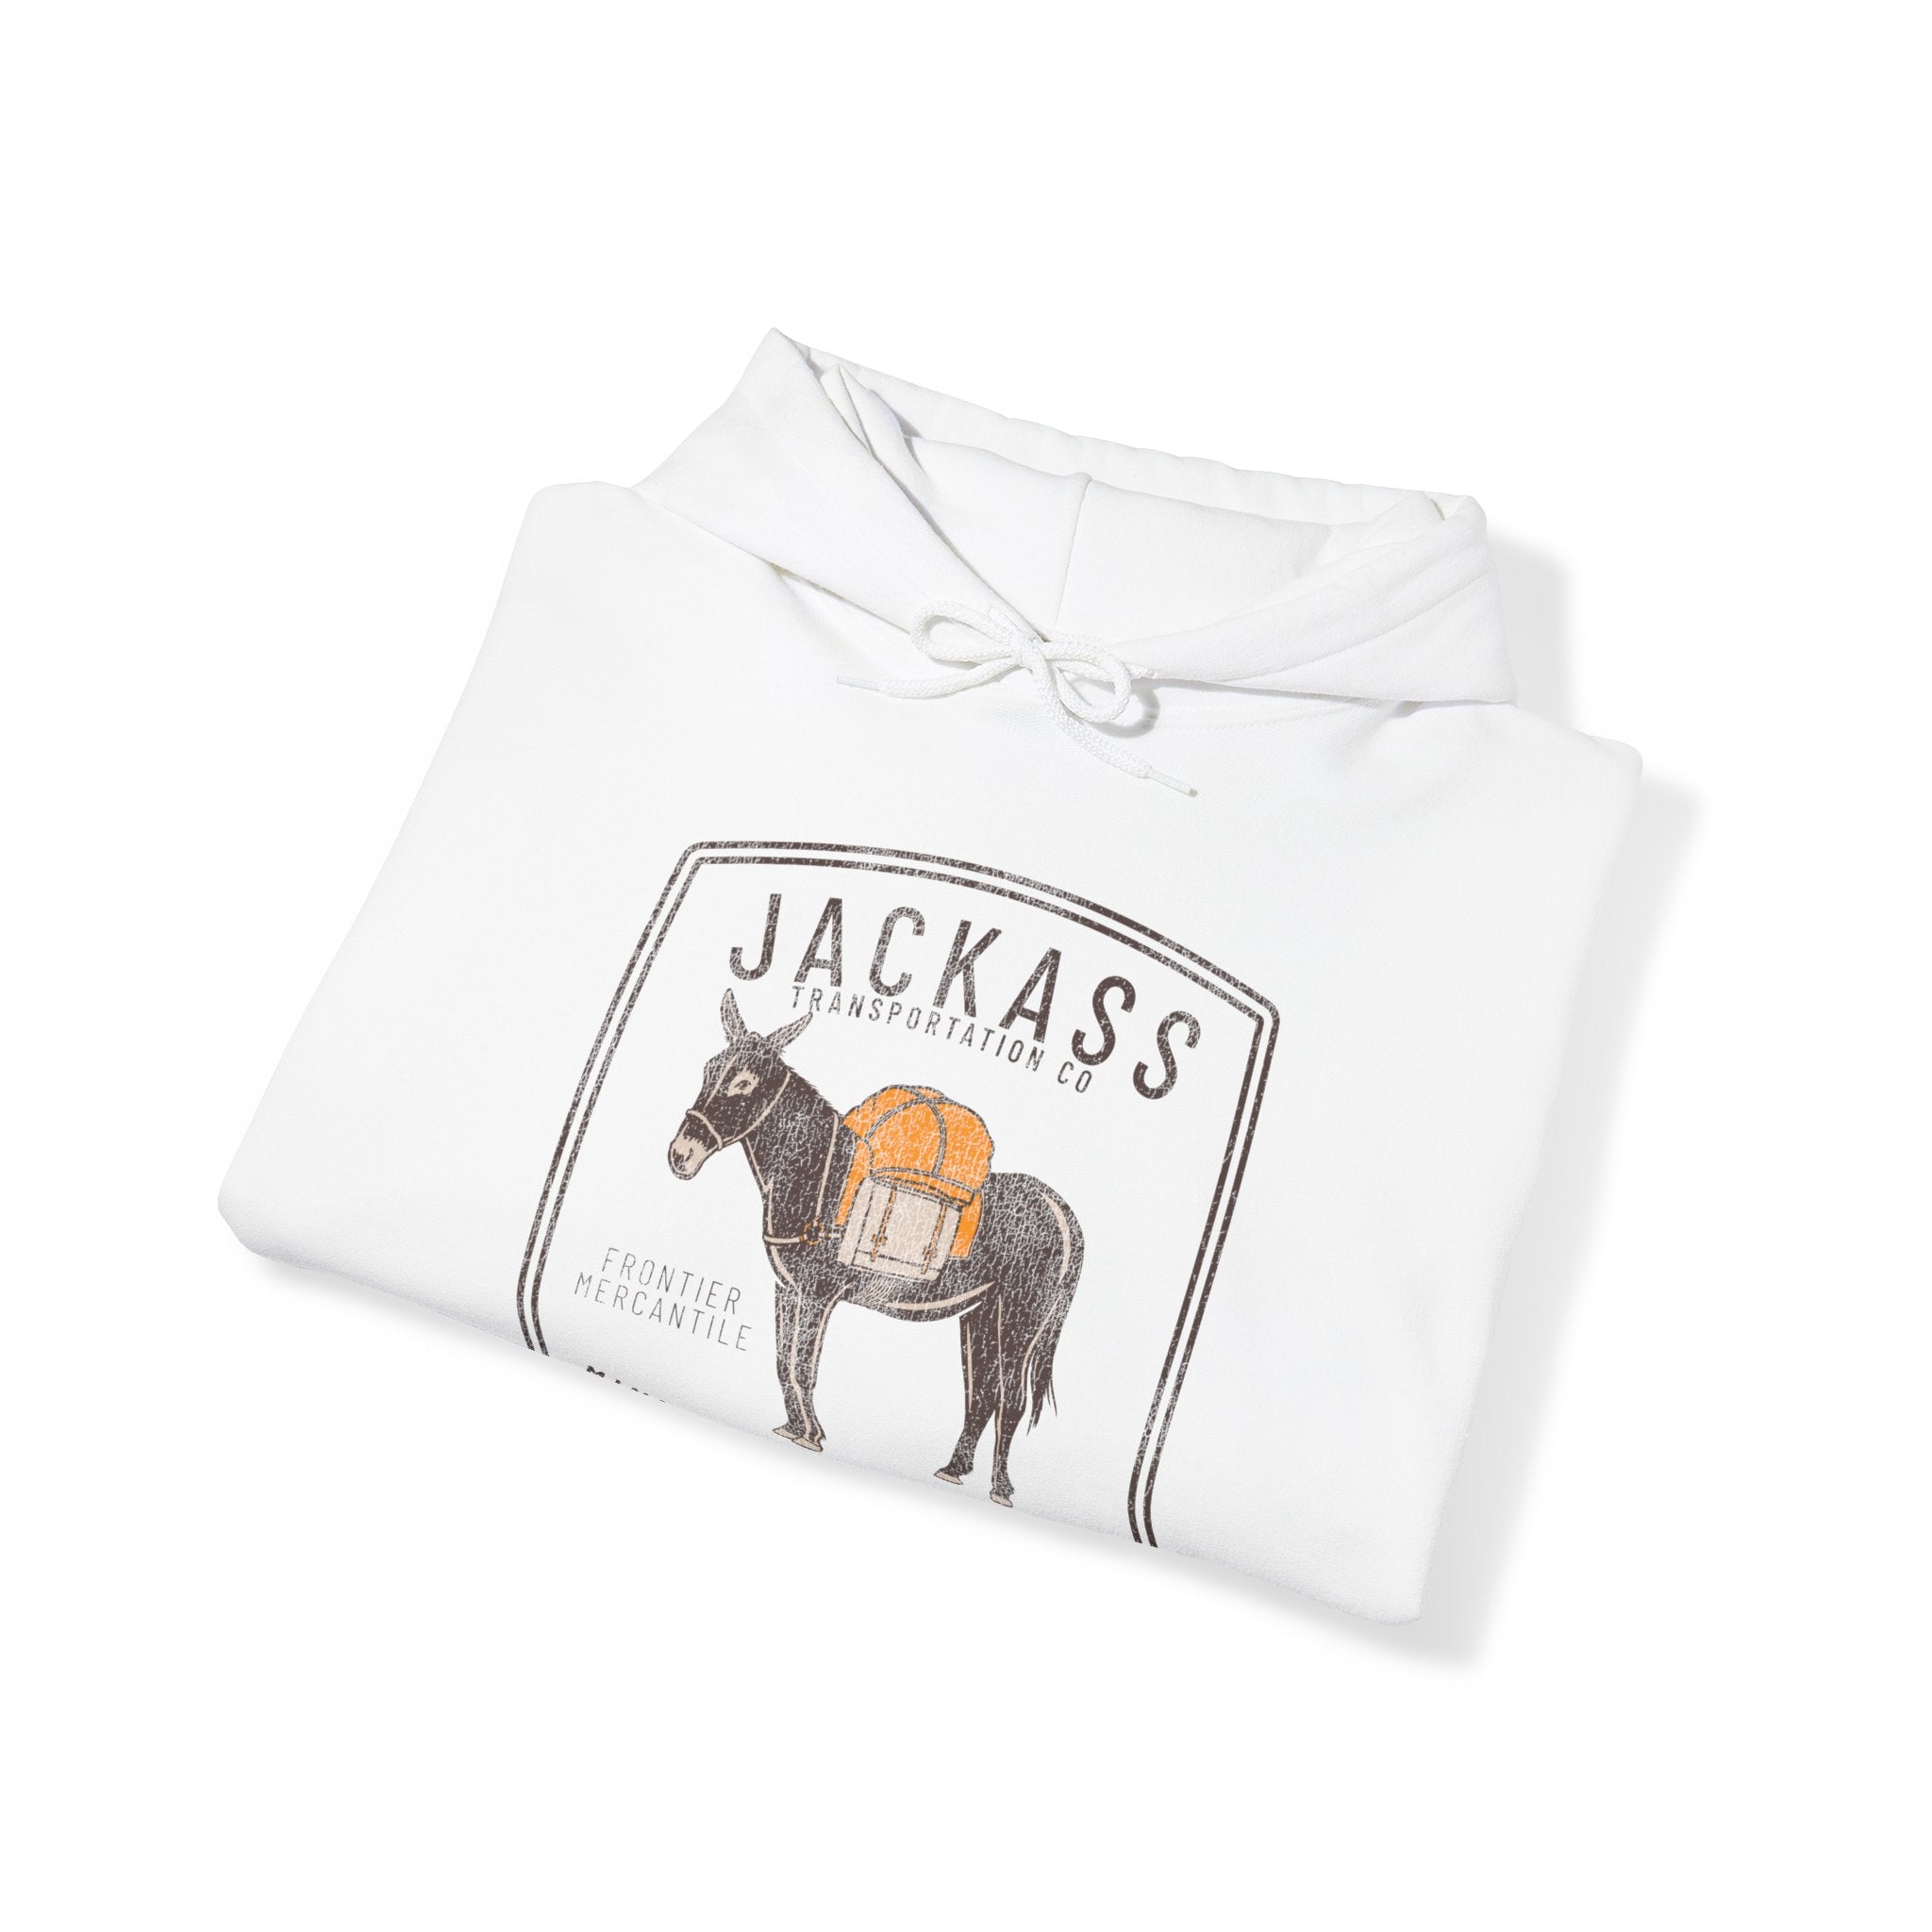 Jackass Transportation Co Hooded Sweatshirt